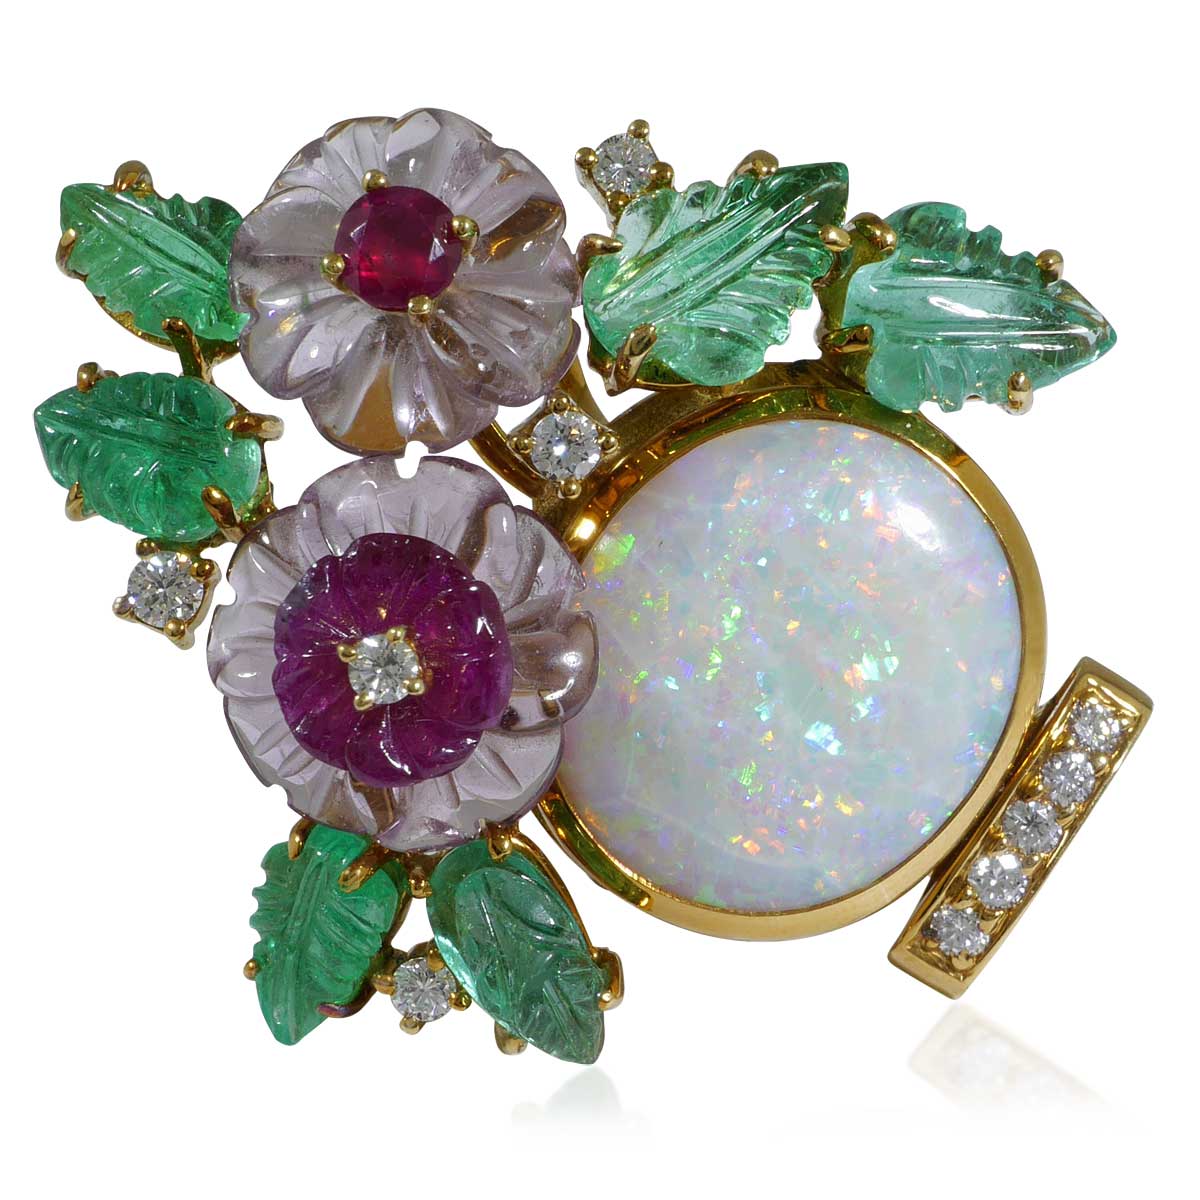 Opalbrosche als Blumentopf mit Blüten aus 5,32ct Smaragd, Rubin,  5,12ct Opal und 10 Diamanten